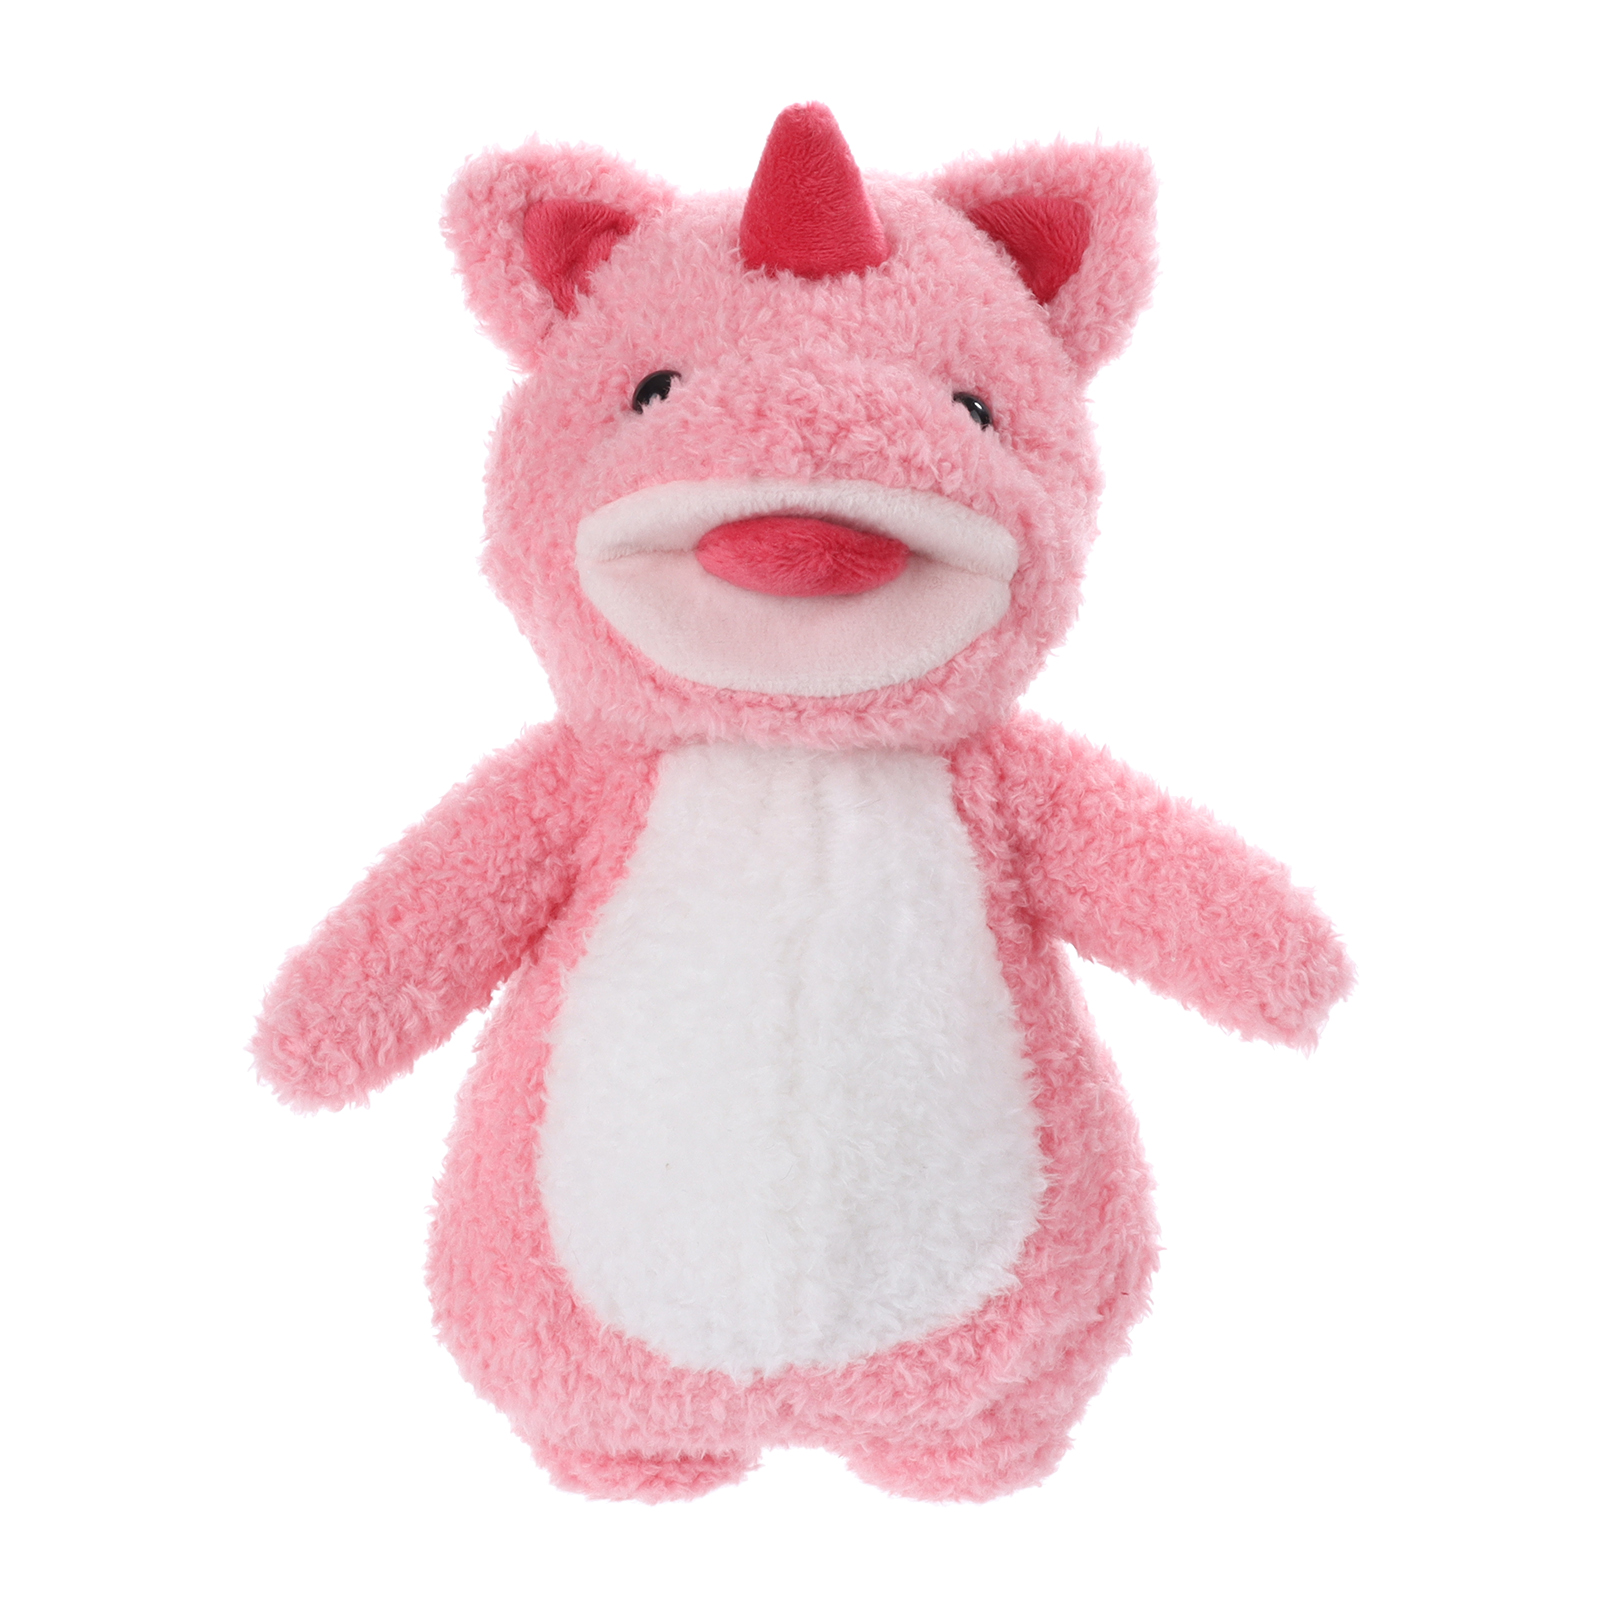 Apricot Lamb Standing Pink Dragon Stuffed Animal Soft Plush Toys